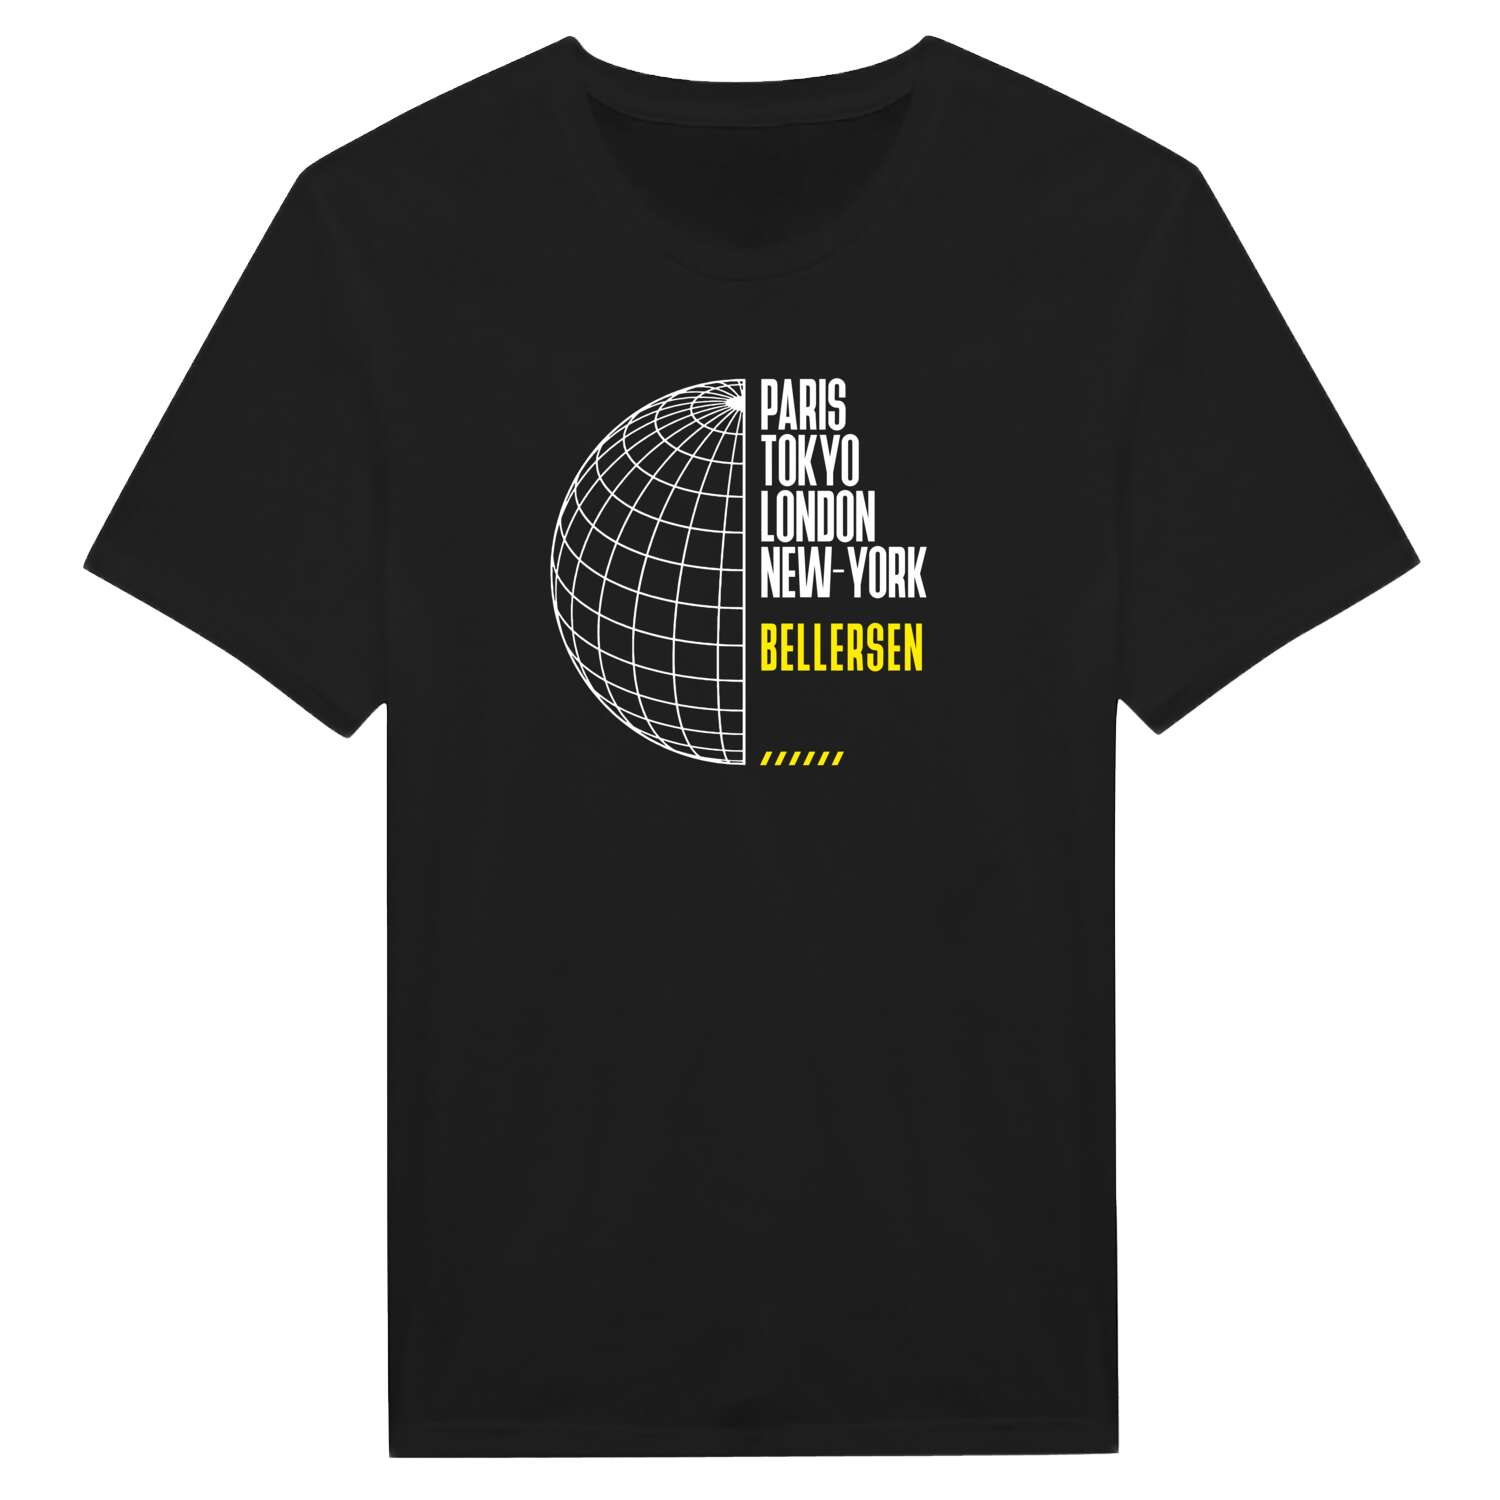 Bellersen T-Shirt »Paris Tokyo London«